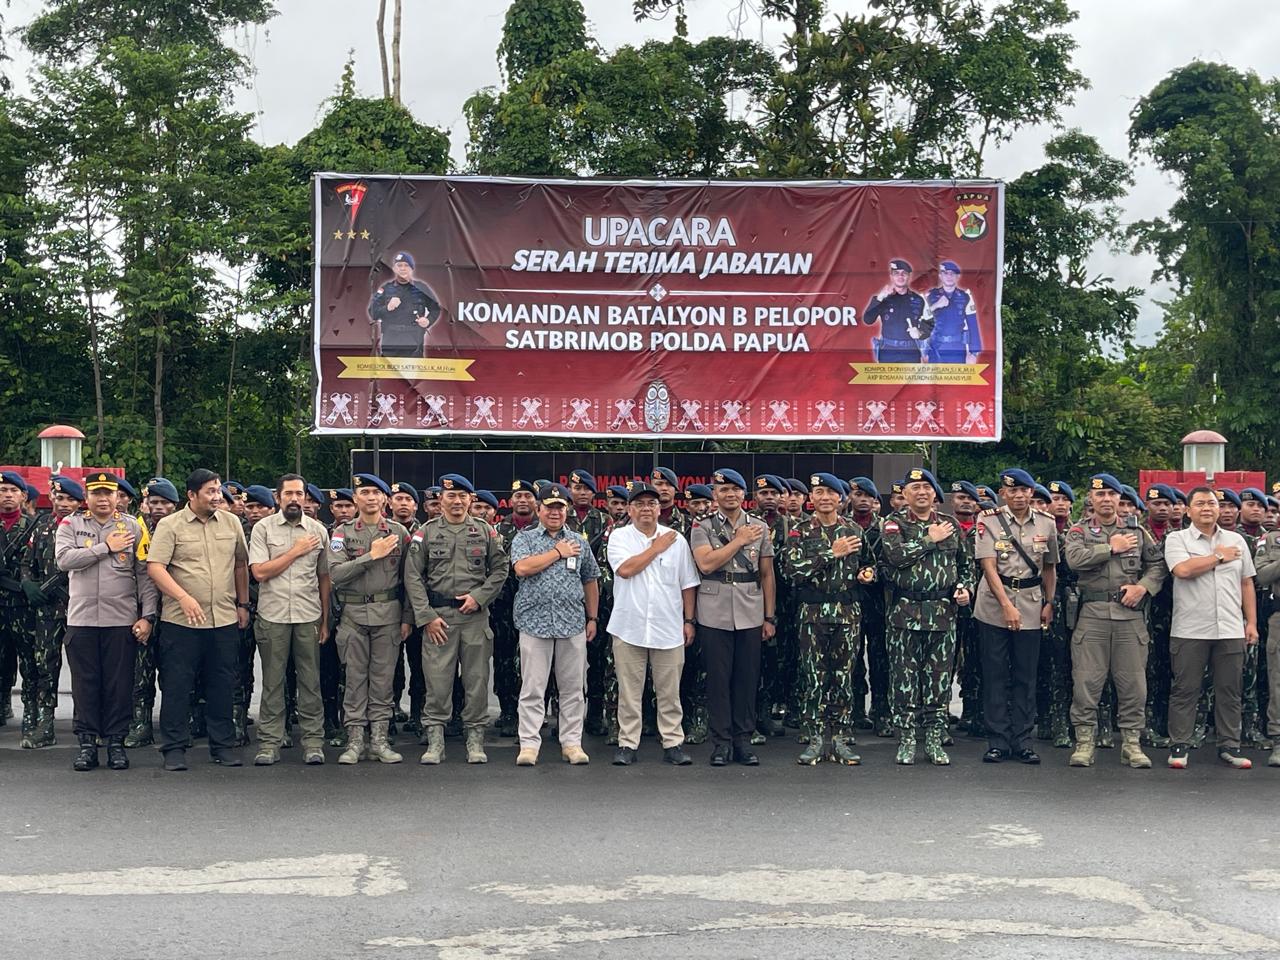 Upacara Serah Terima Jabatan Komandan Batalyon B Pelopor Sat Brimob Polda Papua